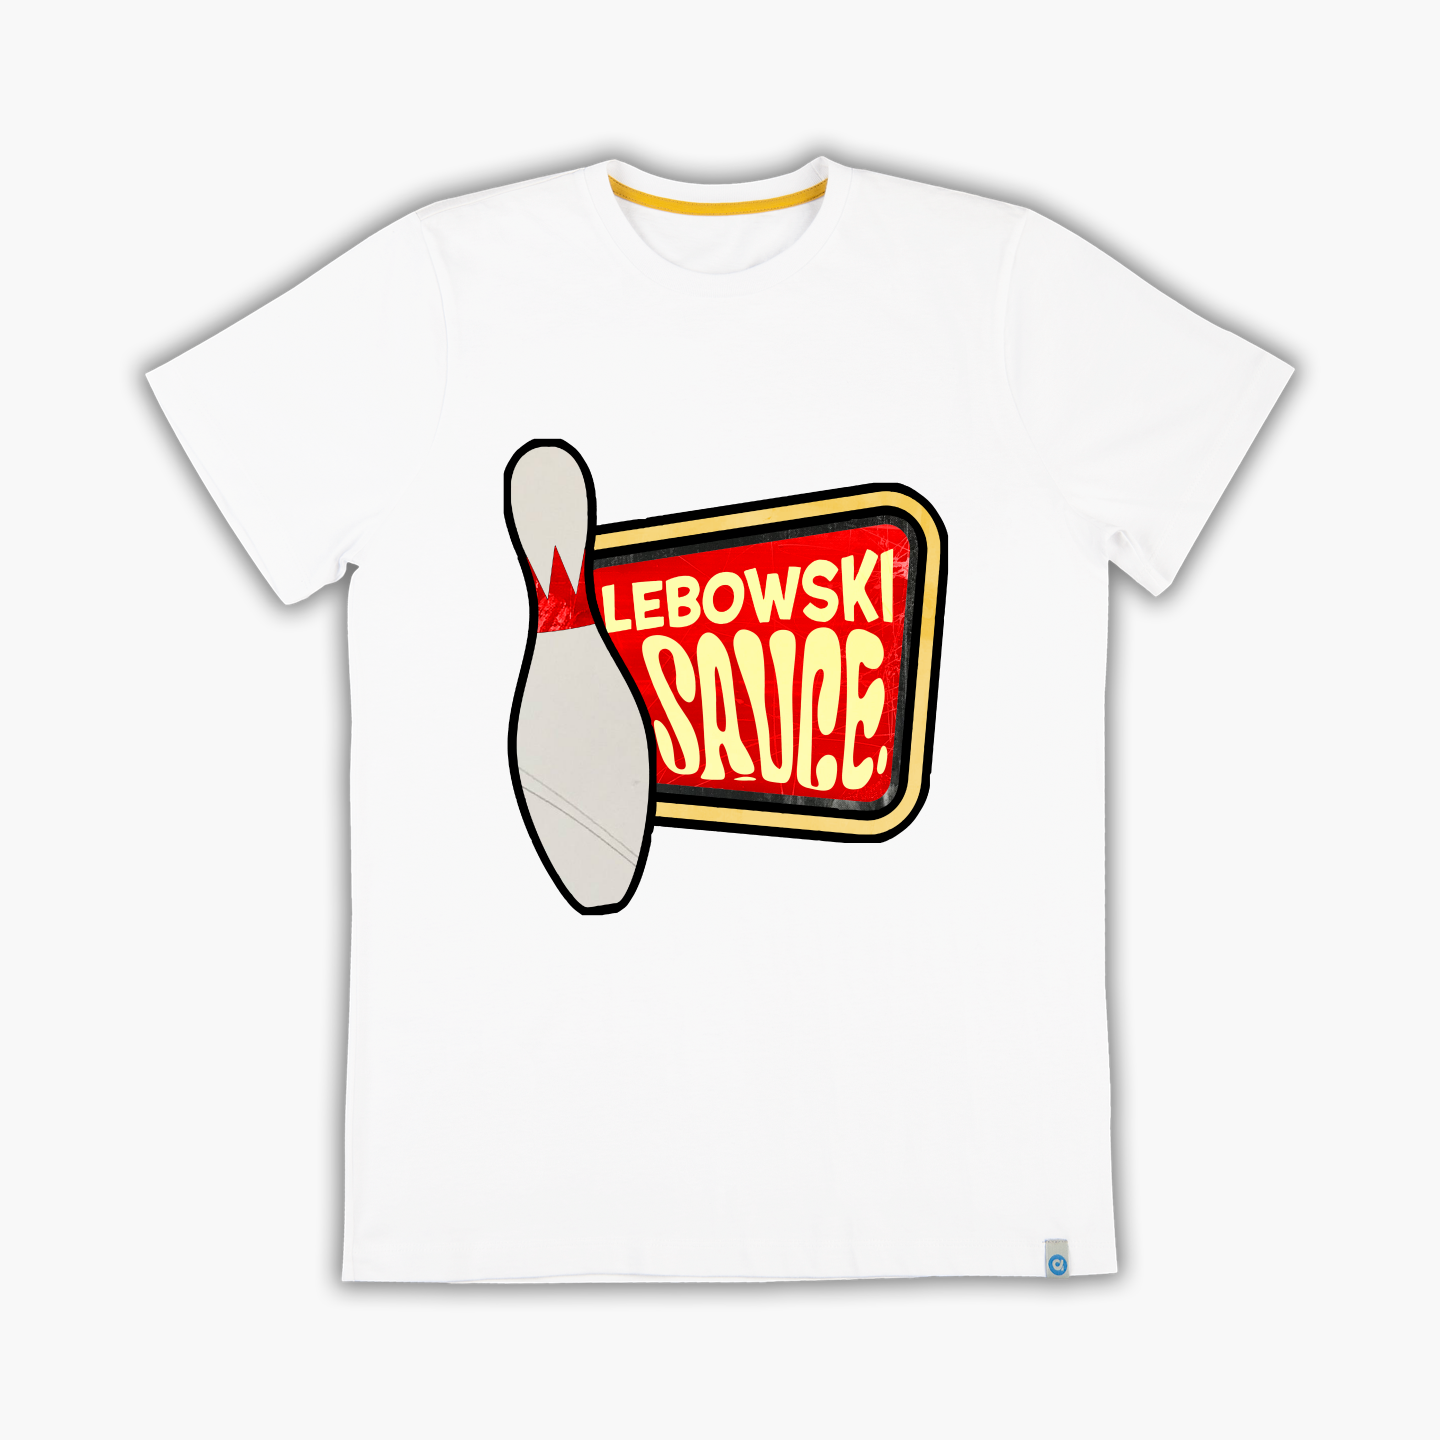 Lebowski Sauce - Tişört